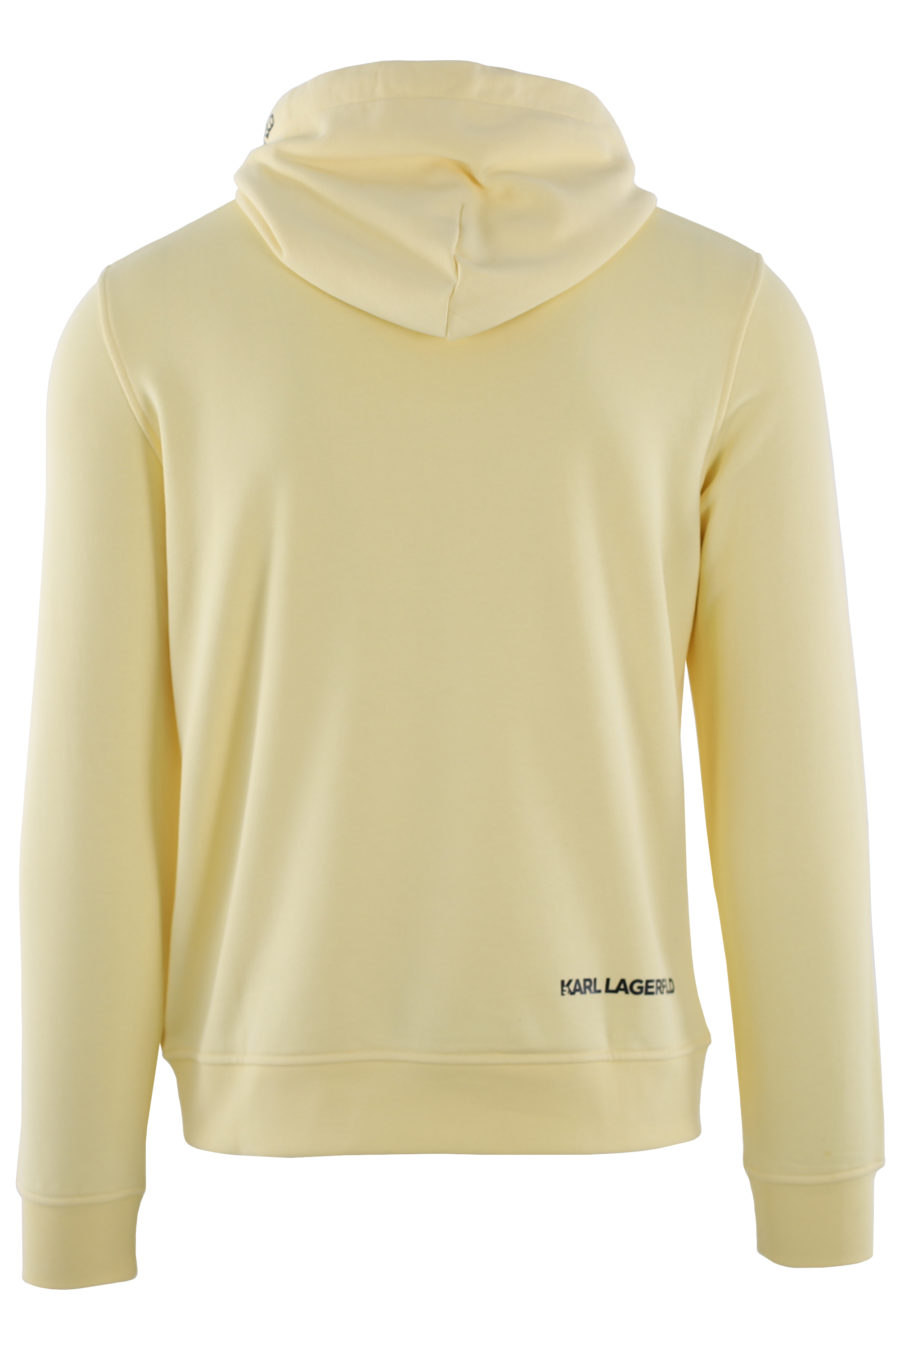 Yellow hooded sweatshirt with rubber logo - IMG 0446